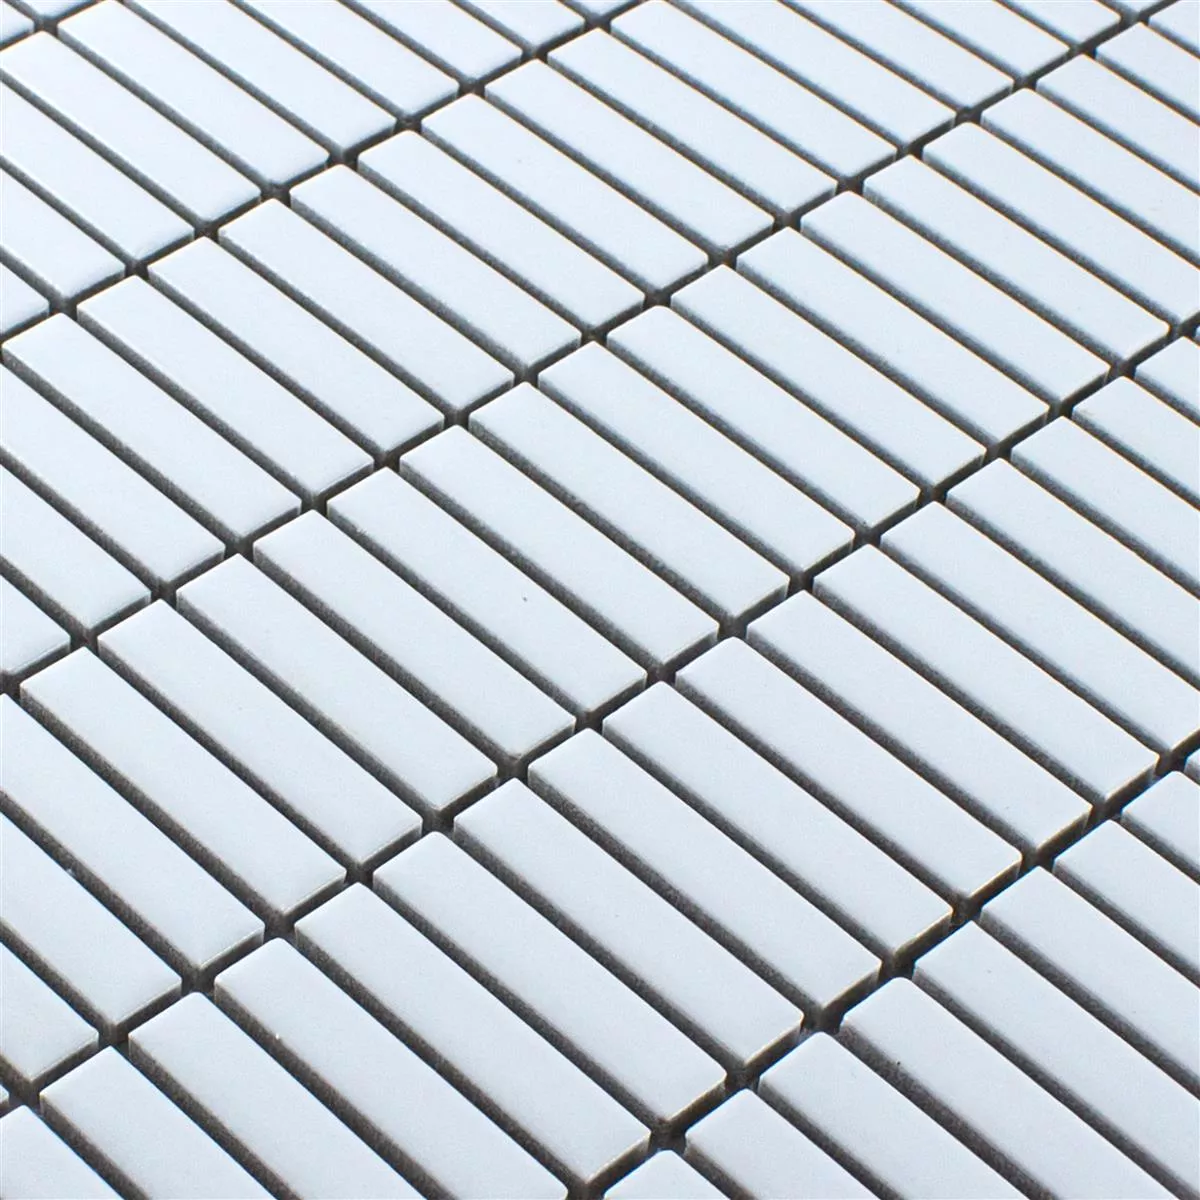 Sample Ceramic Mosaic Tiles Midway Blanc Mat